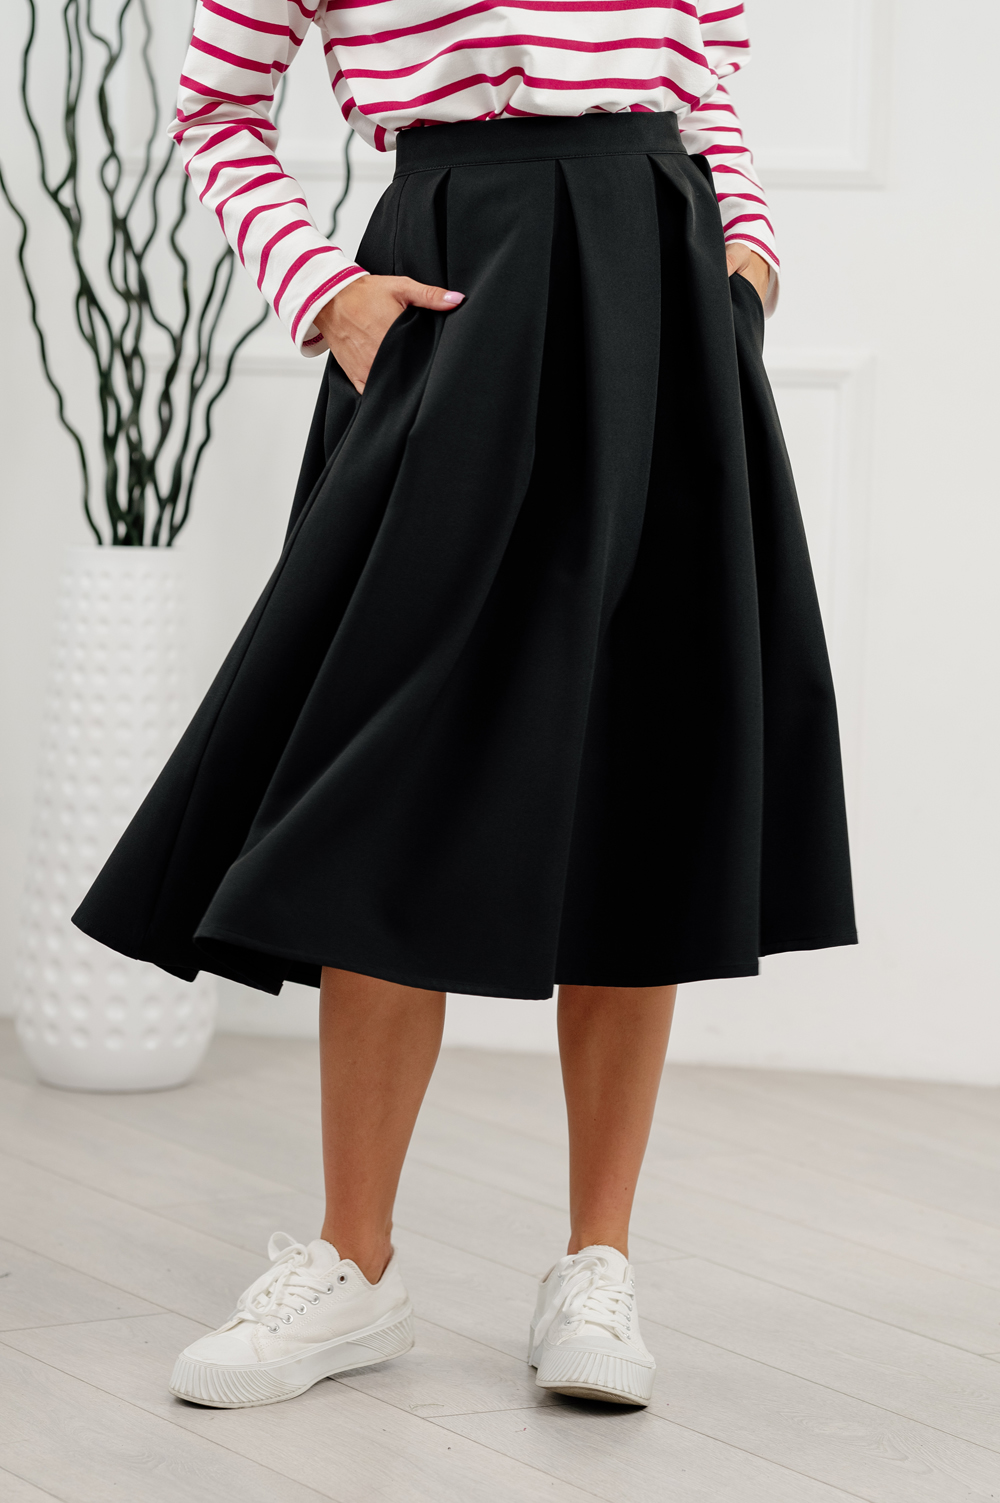 Black pleated below-the-knee skirt